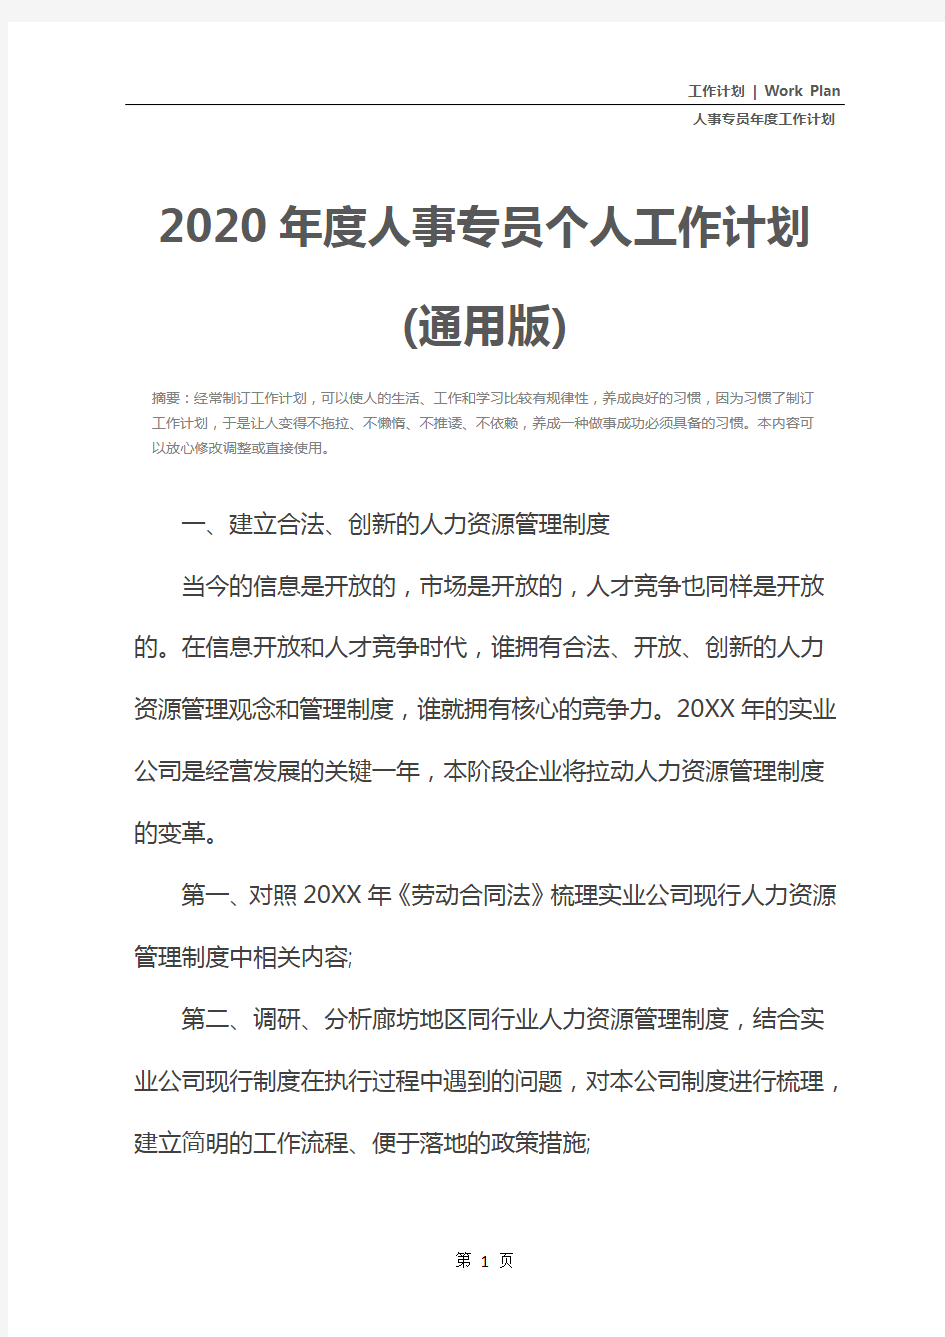 2020年度人事专员个人工作计划(通用版)